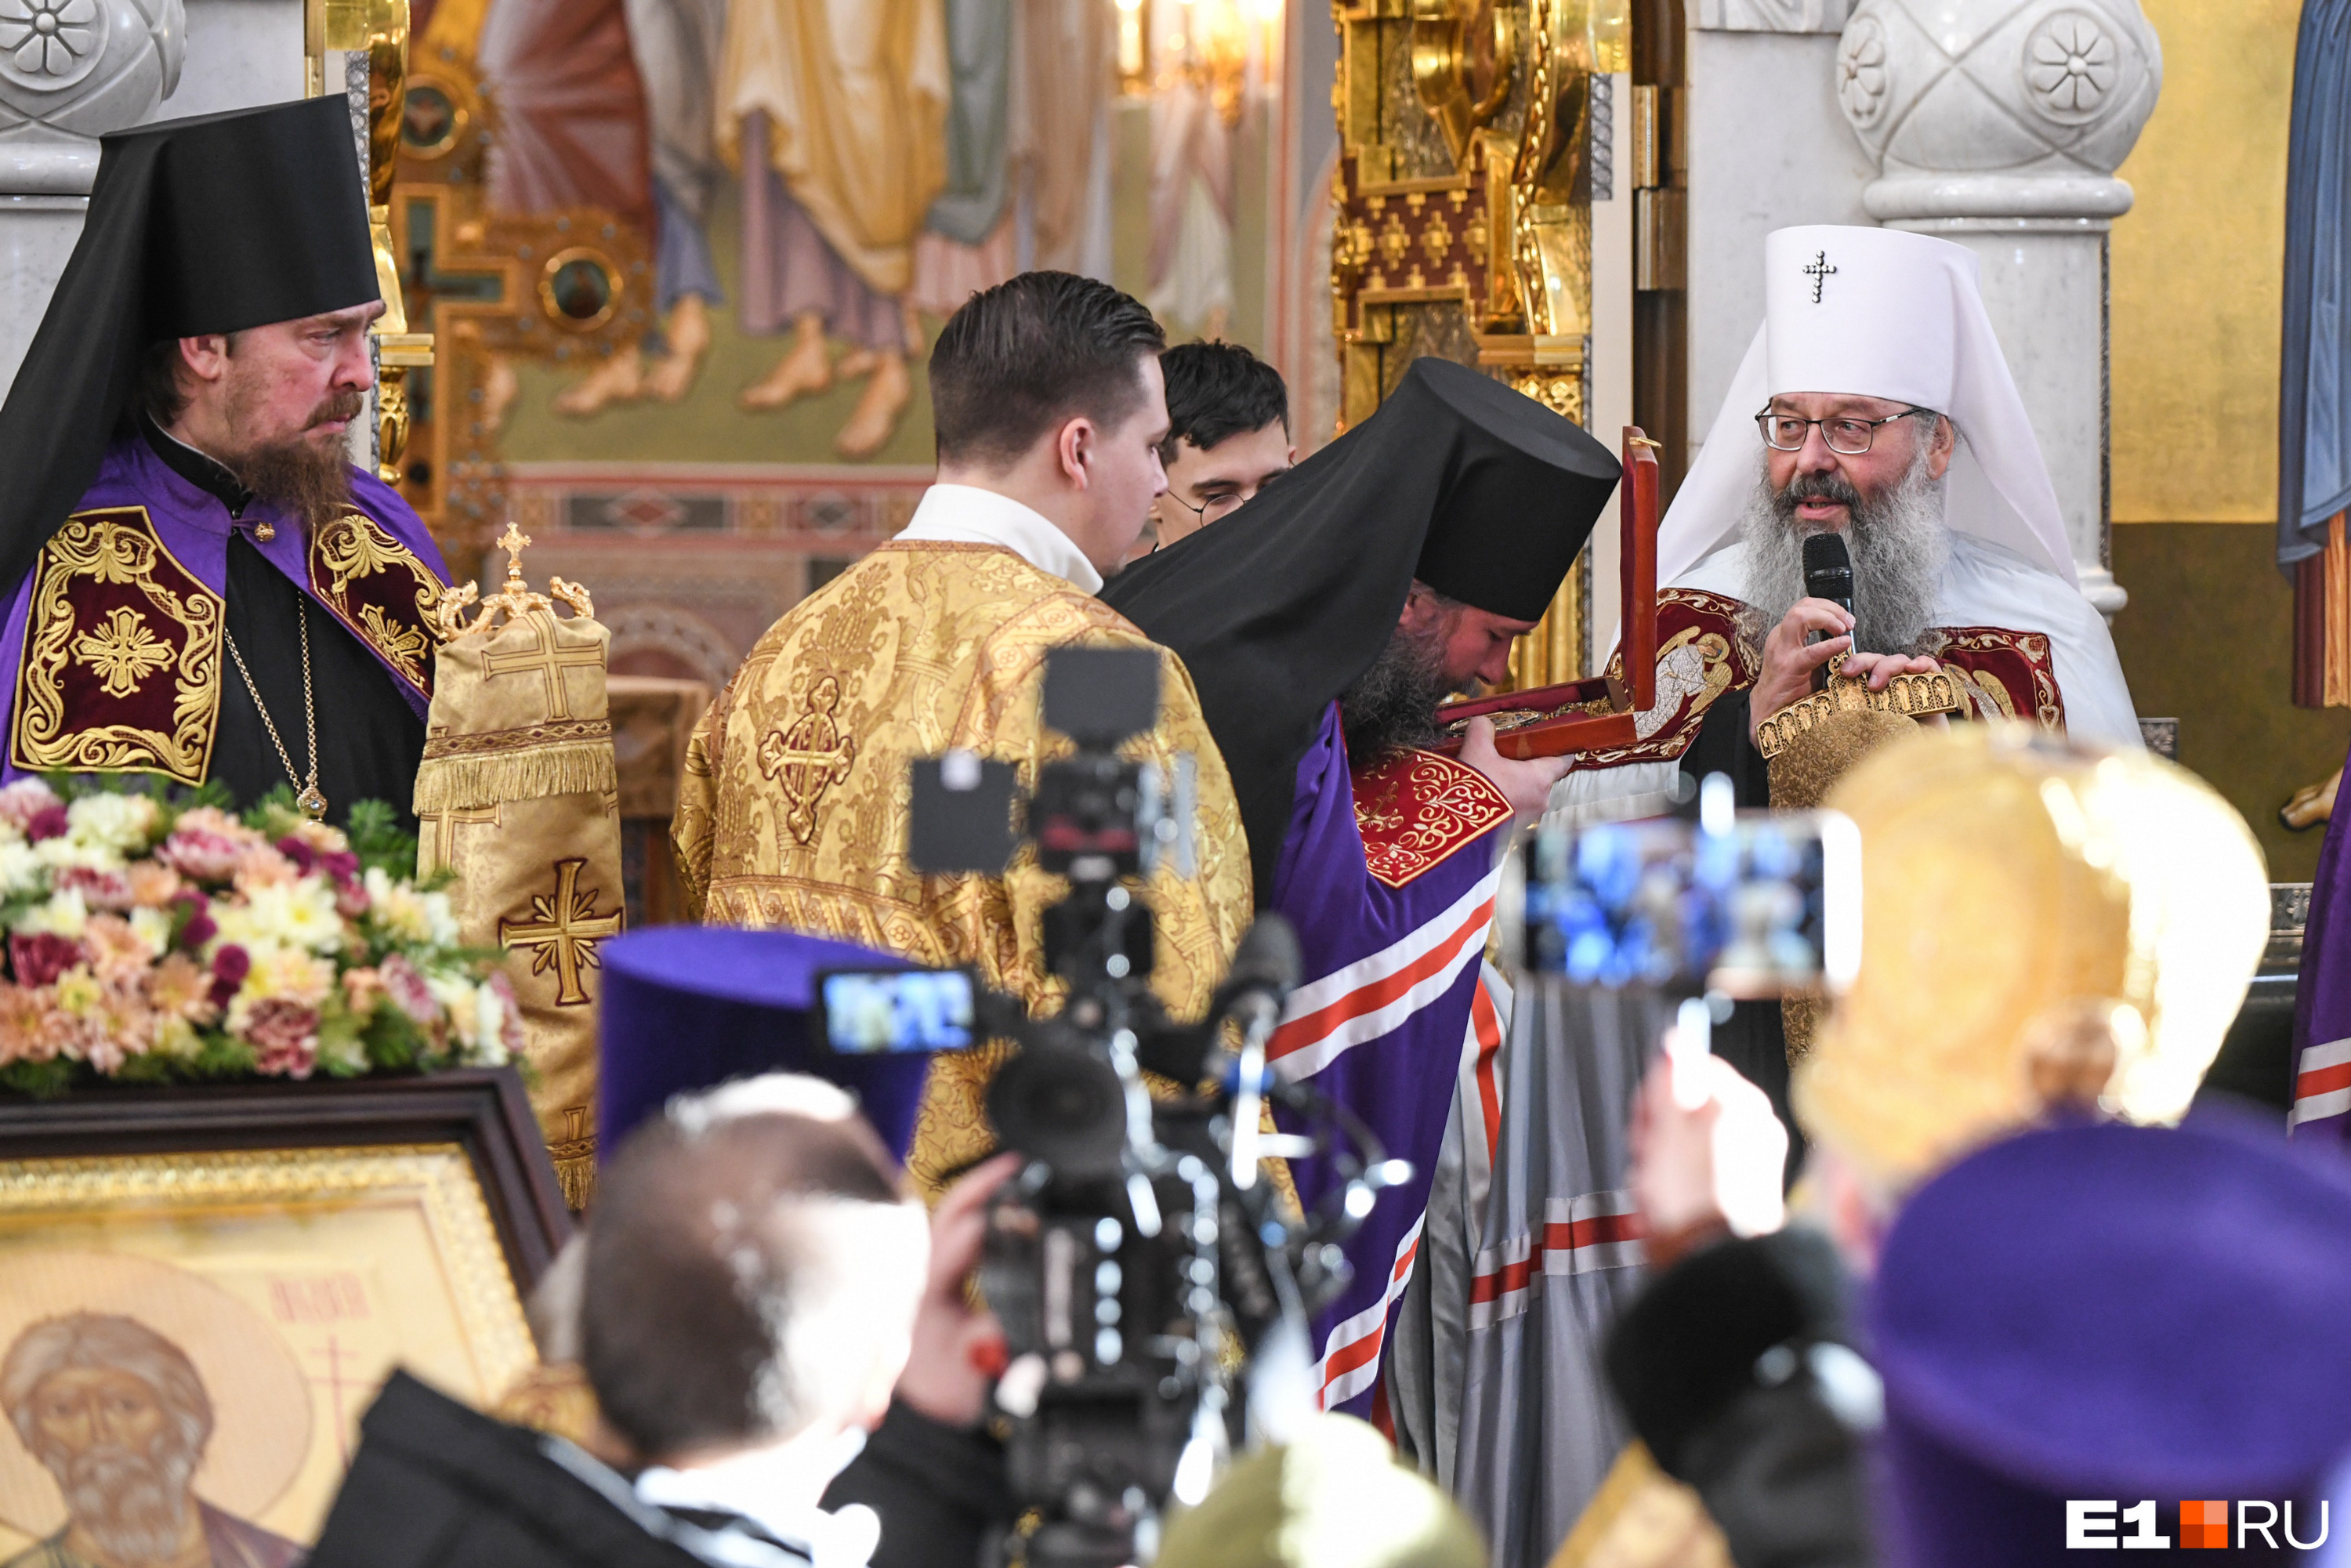 Епископ и митрополит обменялись священными подарками